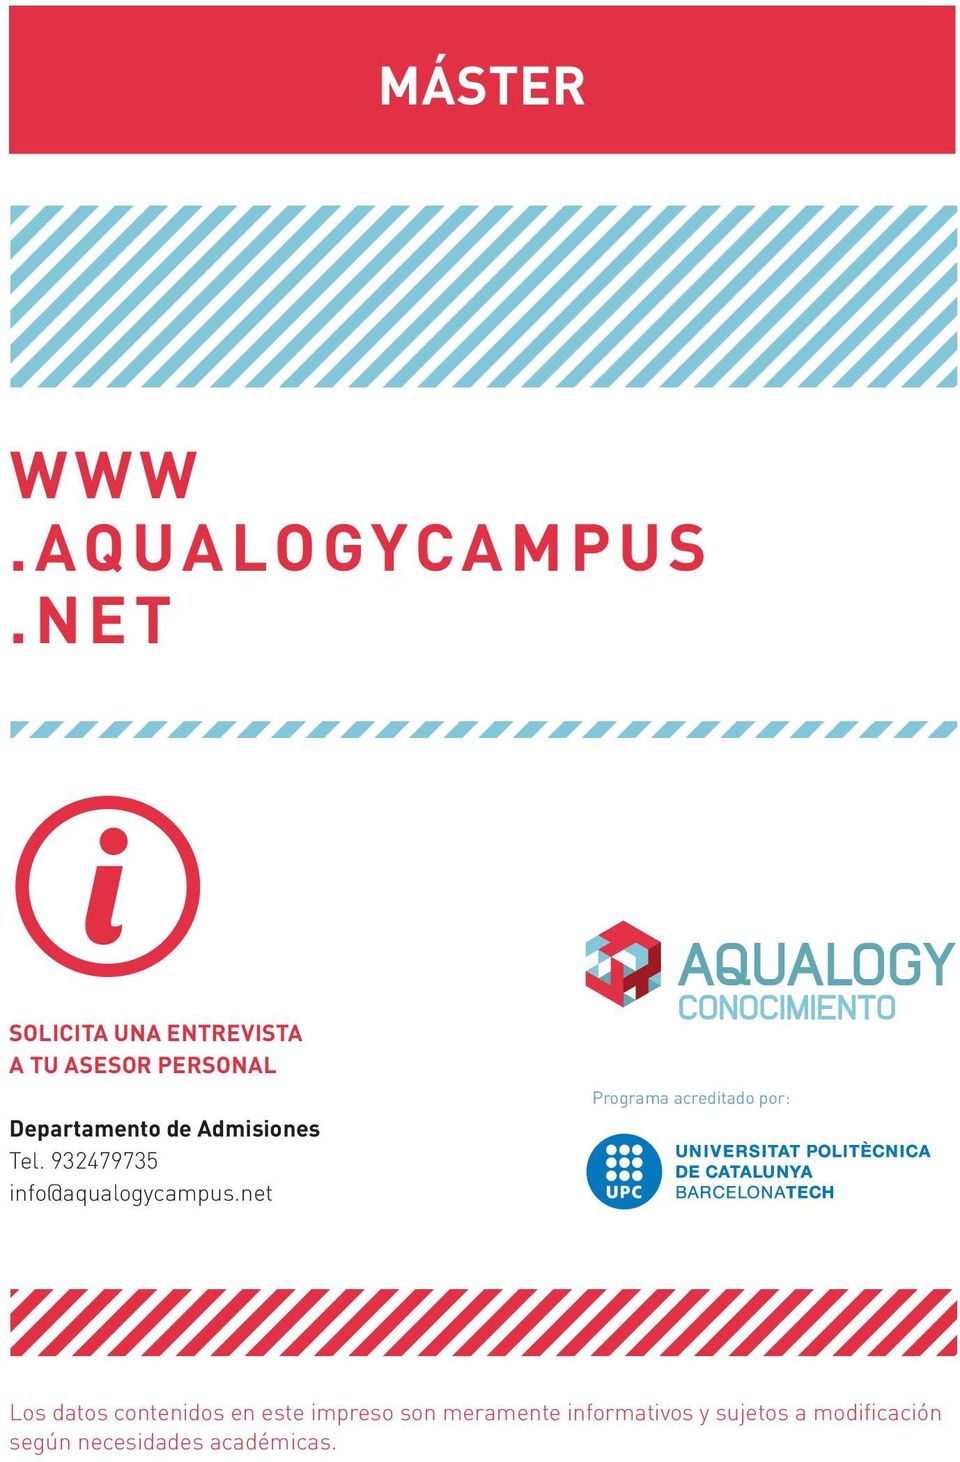 Admisiones Tel. 932479735 info@aqualogycampus.